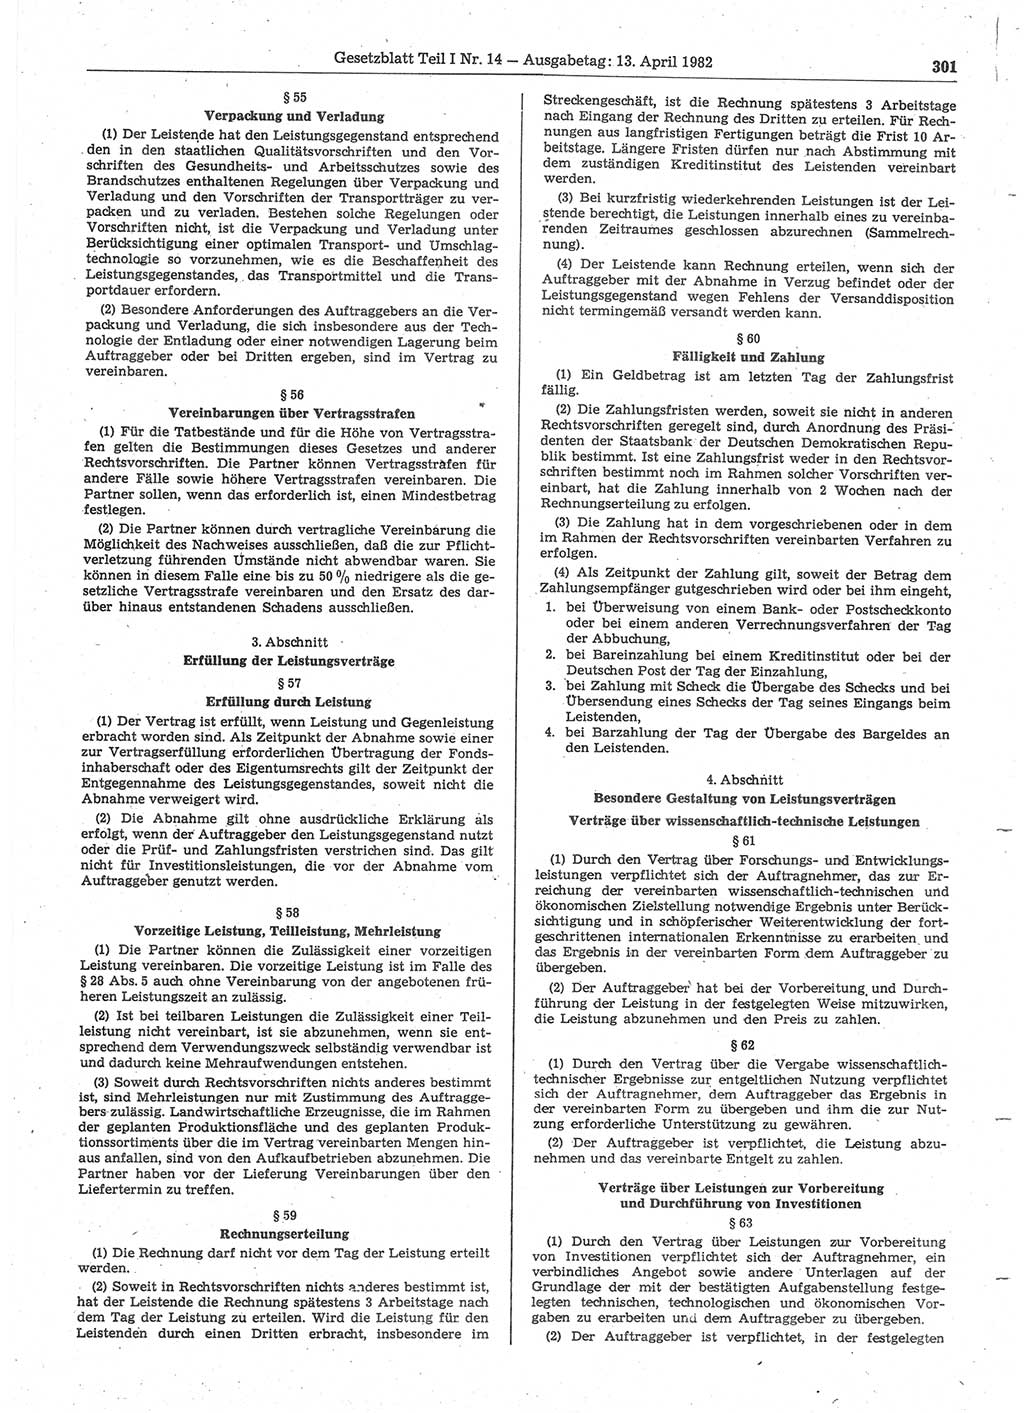 Gesetzblatt (GBl.) der Deutschen Demokratischen Republik (DDR) Teil Ⅰ 1982, Seite 301 (GBl. DDR Ⅰ 1982, S. 301)